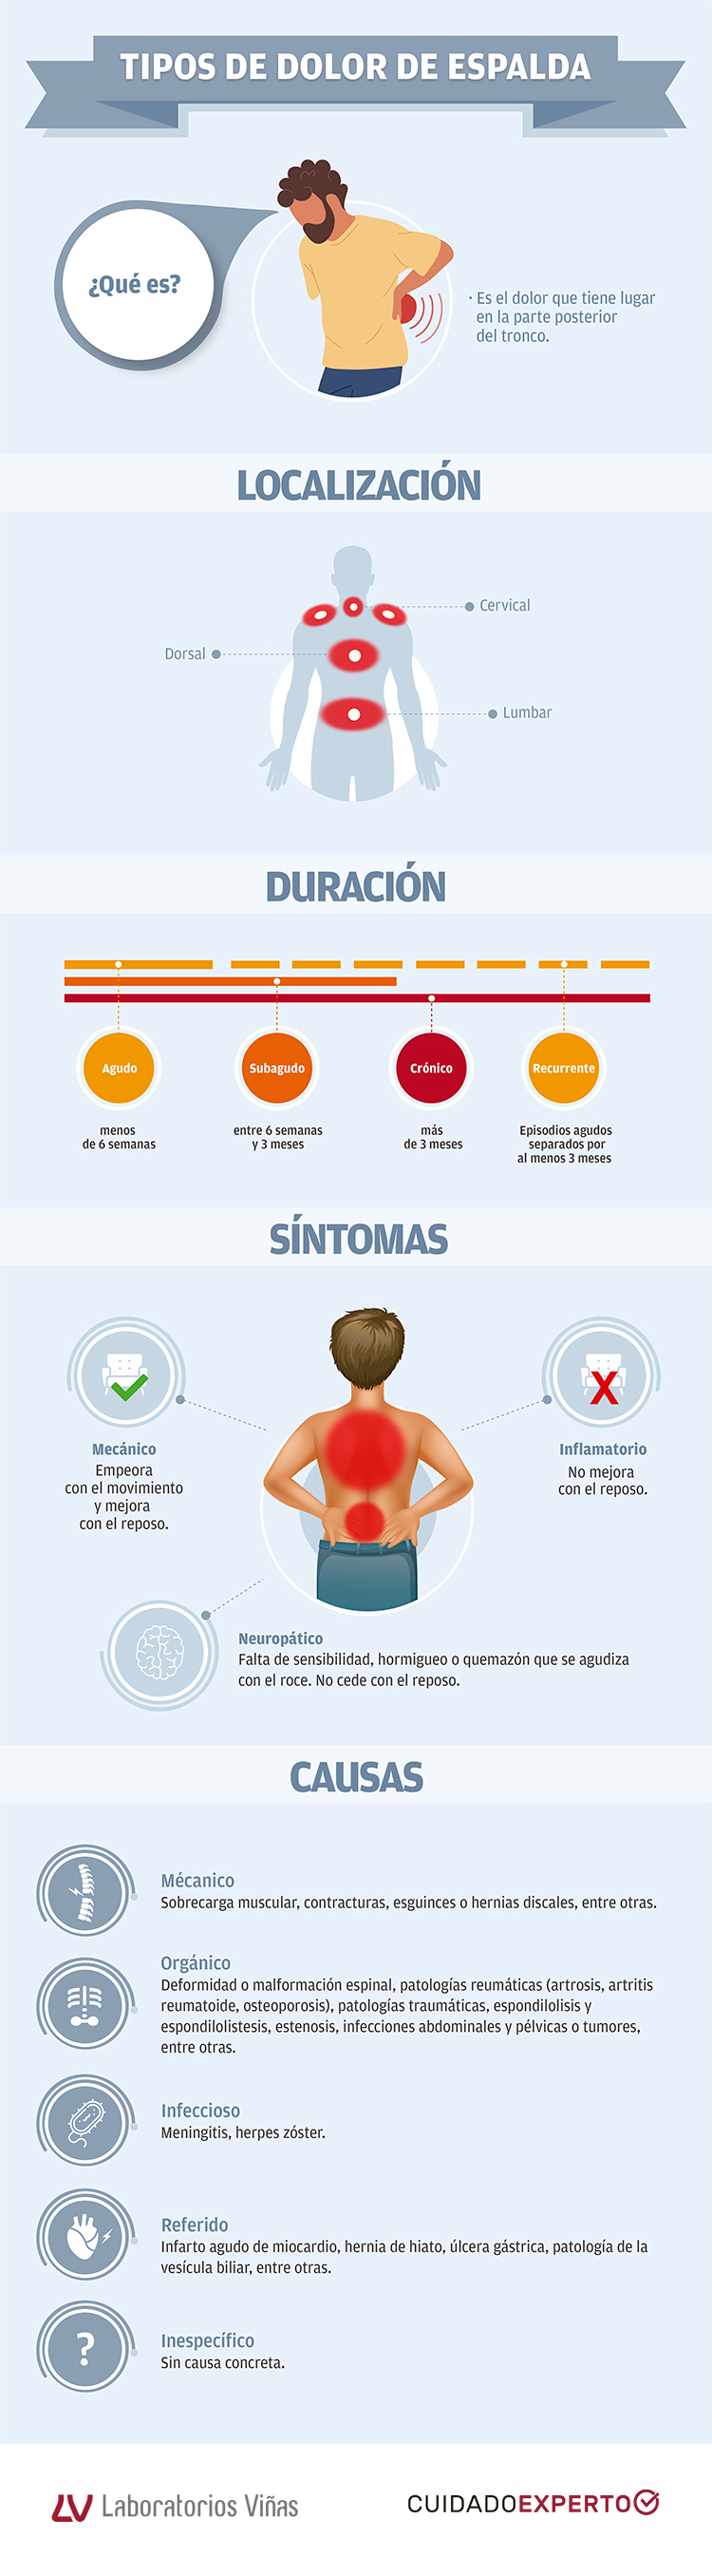 Dolor de espalda - Tipos, Causas y Síntomas